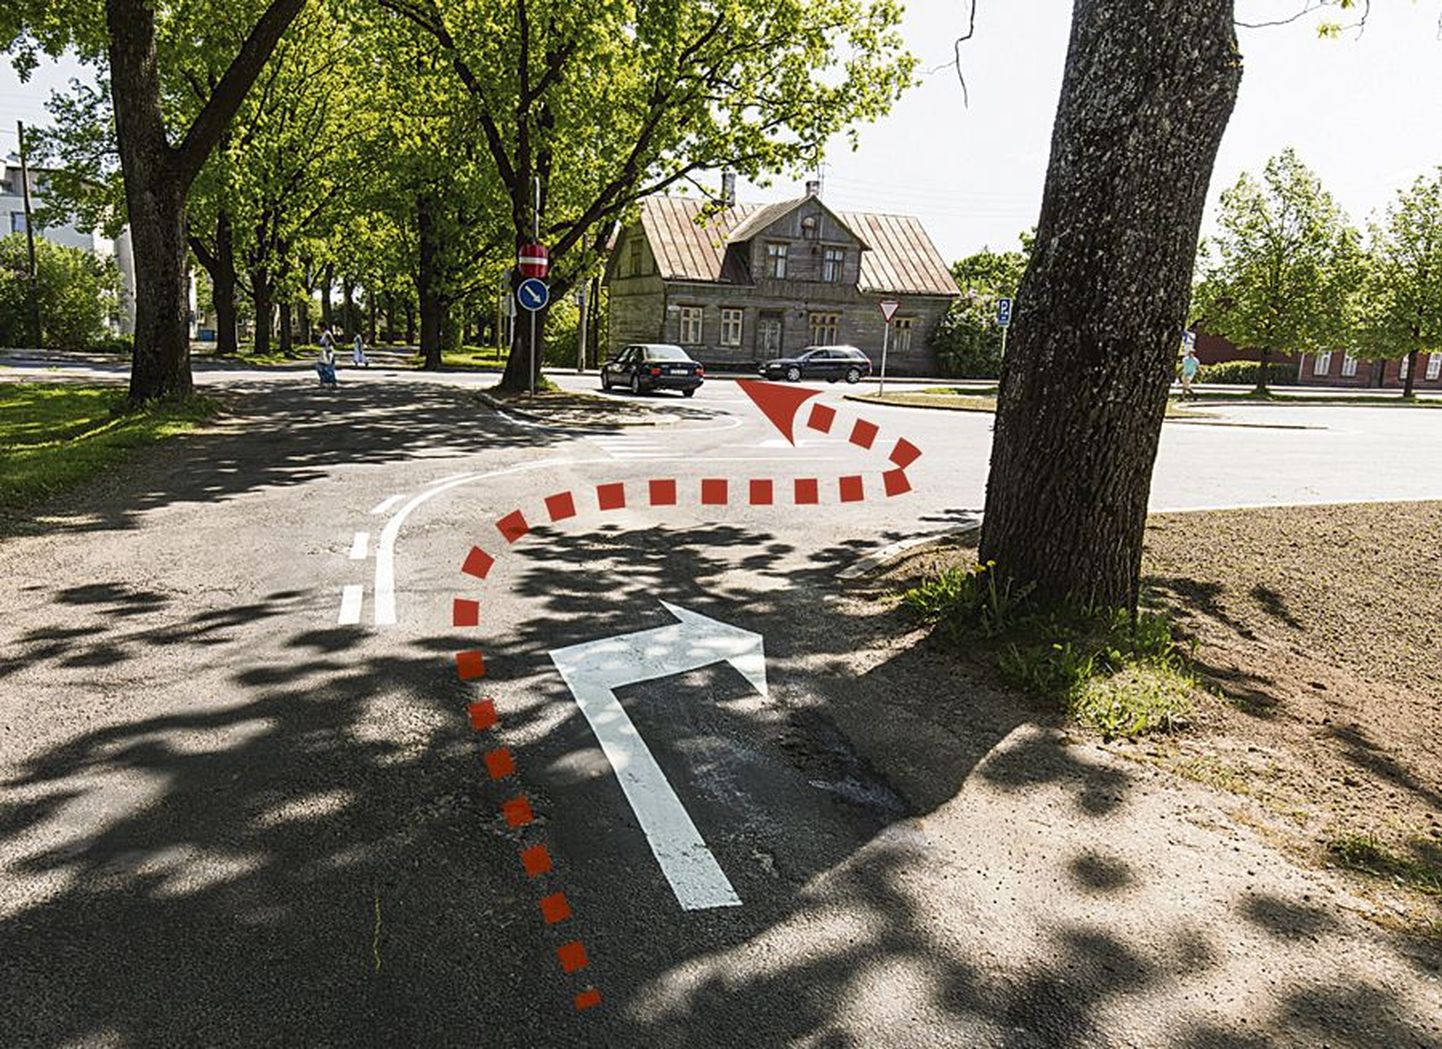 Maramaa puiesteelt Tallinna tänavale suunduvad autod ei tohi enam ristmikule otse välja sõita, vaid peavad oma teekonnal tegema iselaadse jõnksu.